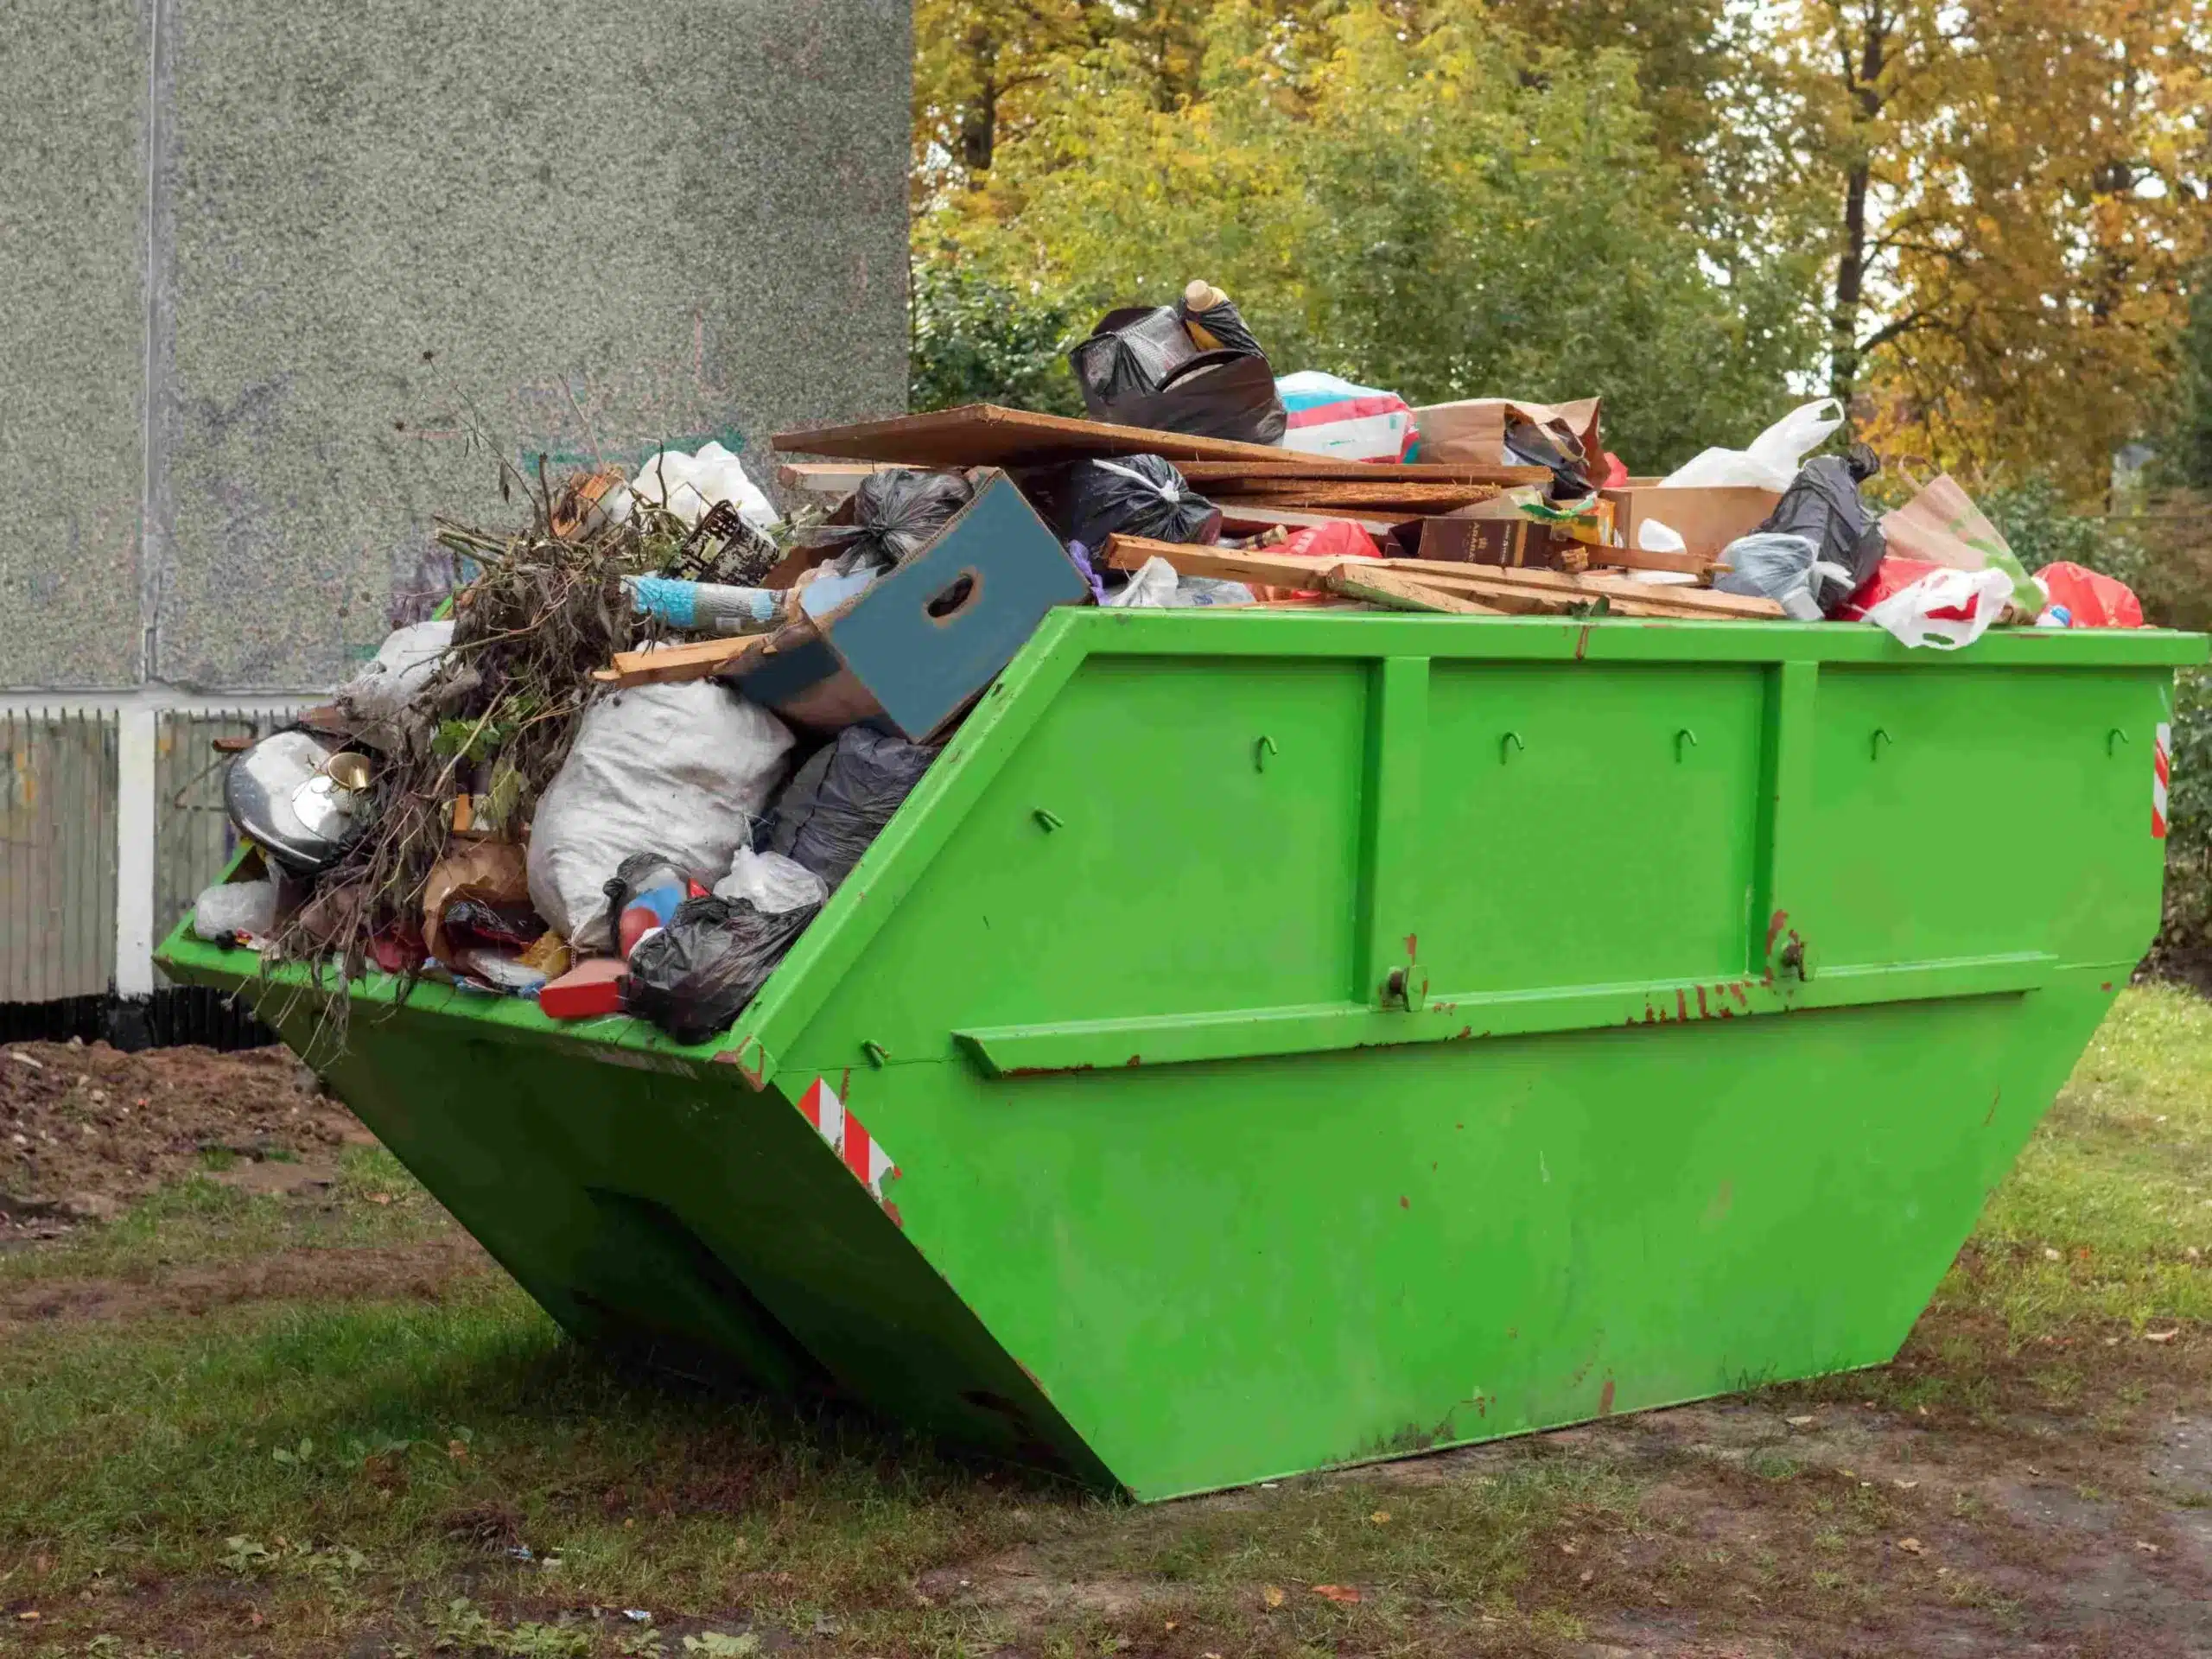 Advantages of Dumpster Rentals for Business Waste Management